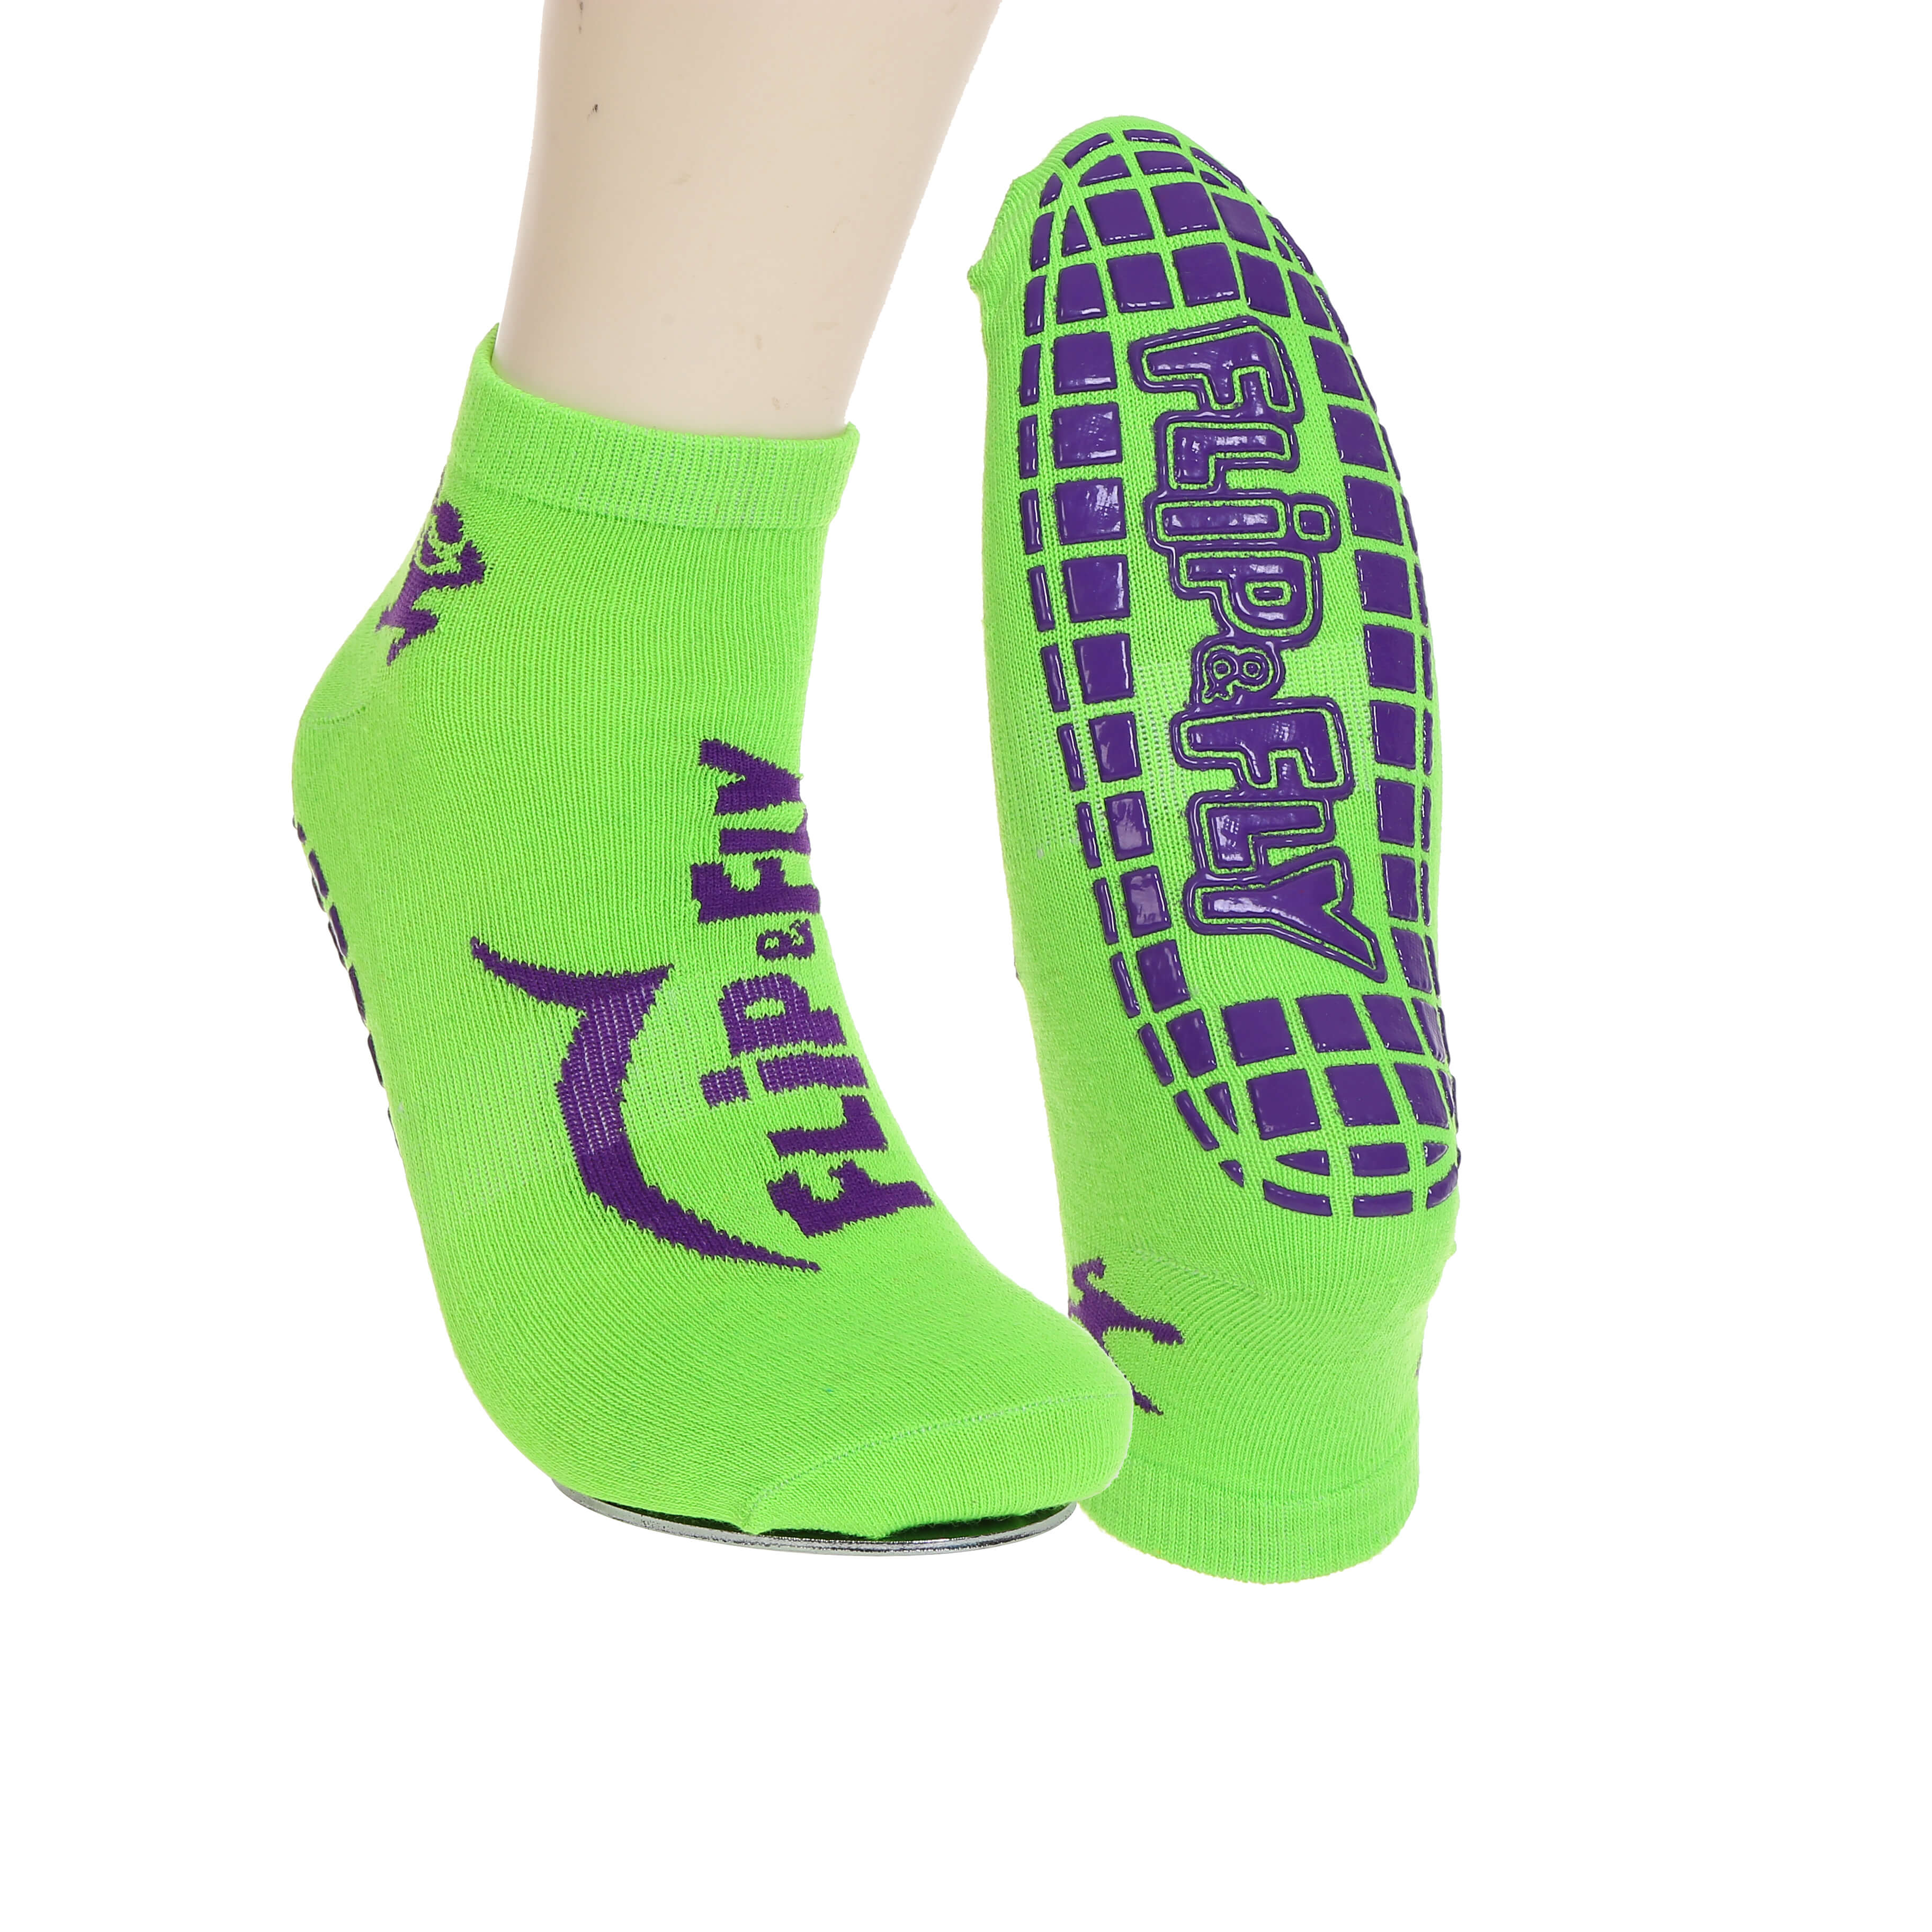 SN-S1113 Yoga Anti-Slip Socks for Women with Grips